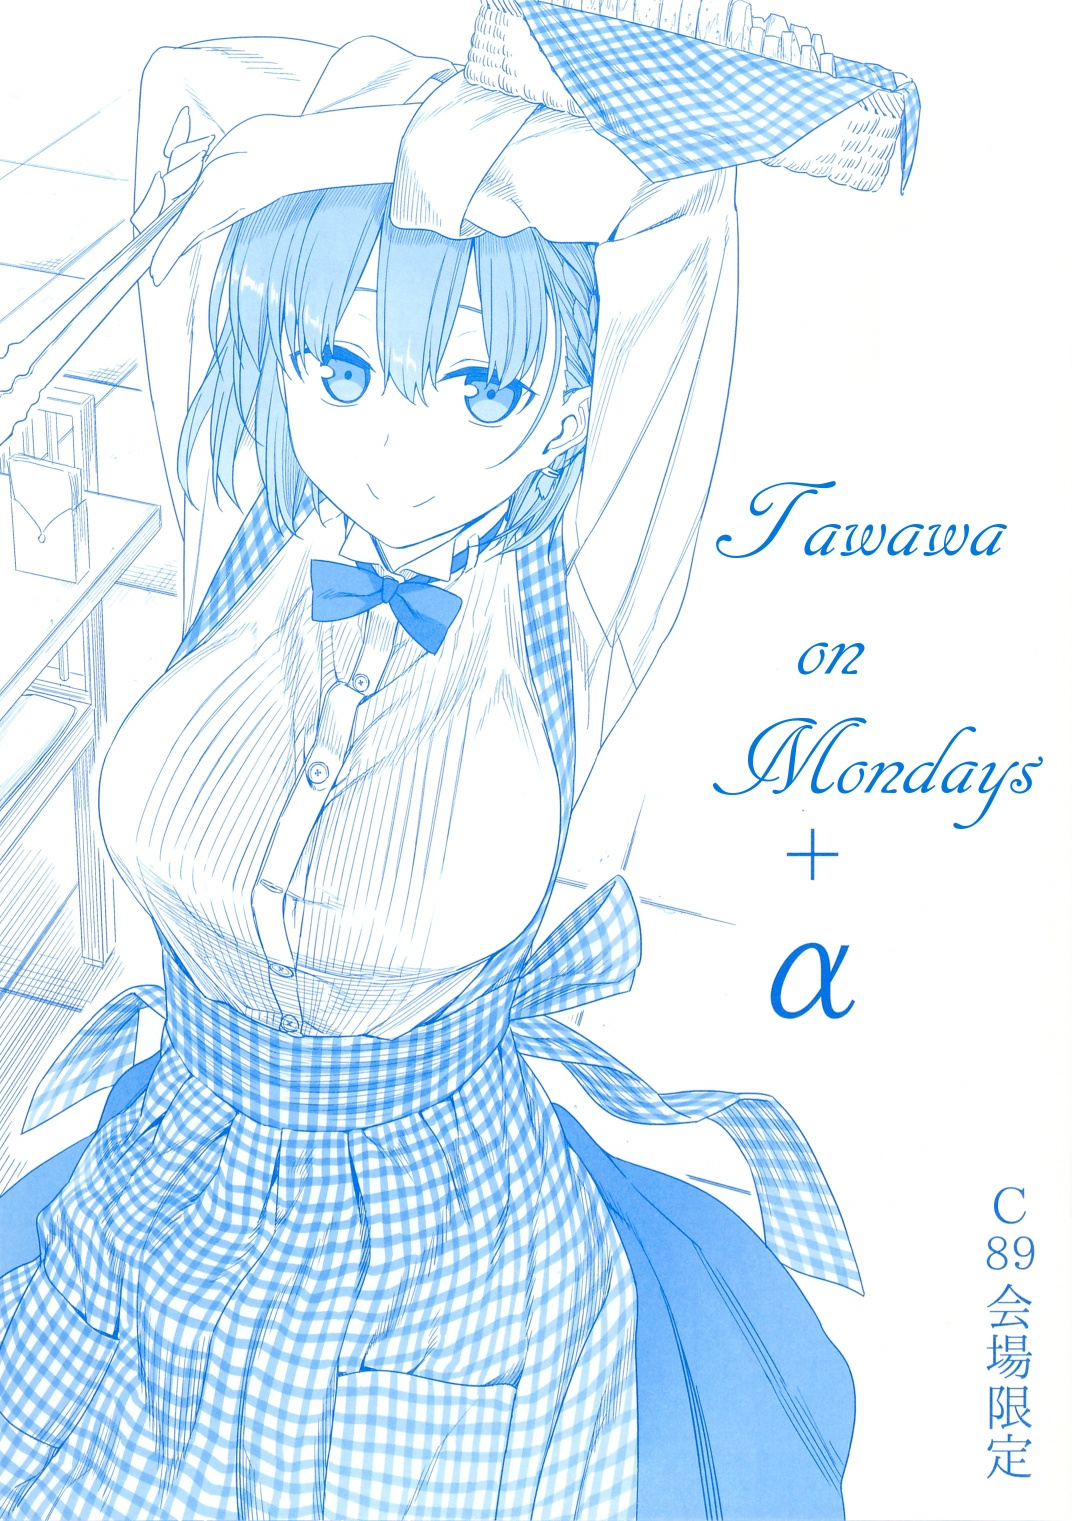 Tawawa on Monday manga, read Tawawa on Monday, Tawawa on Monday anime, read Tawawa on Monday manga